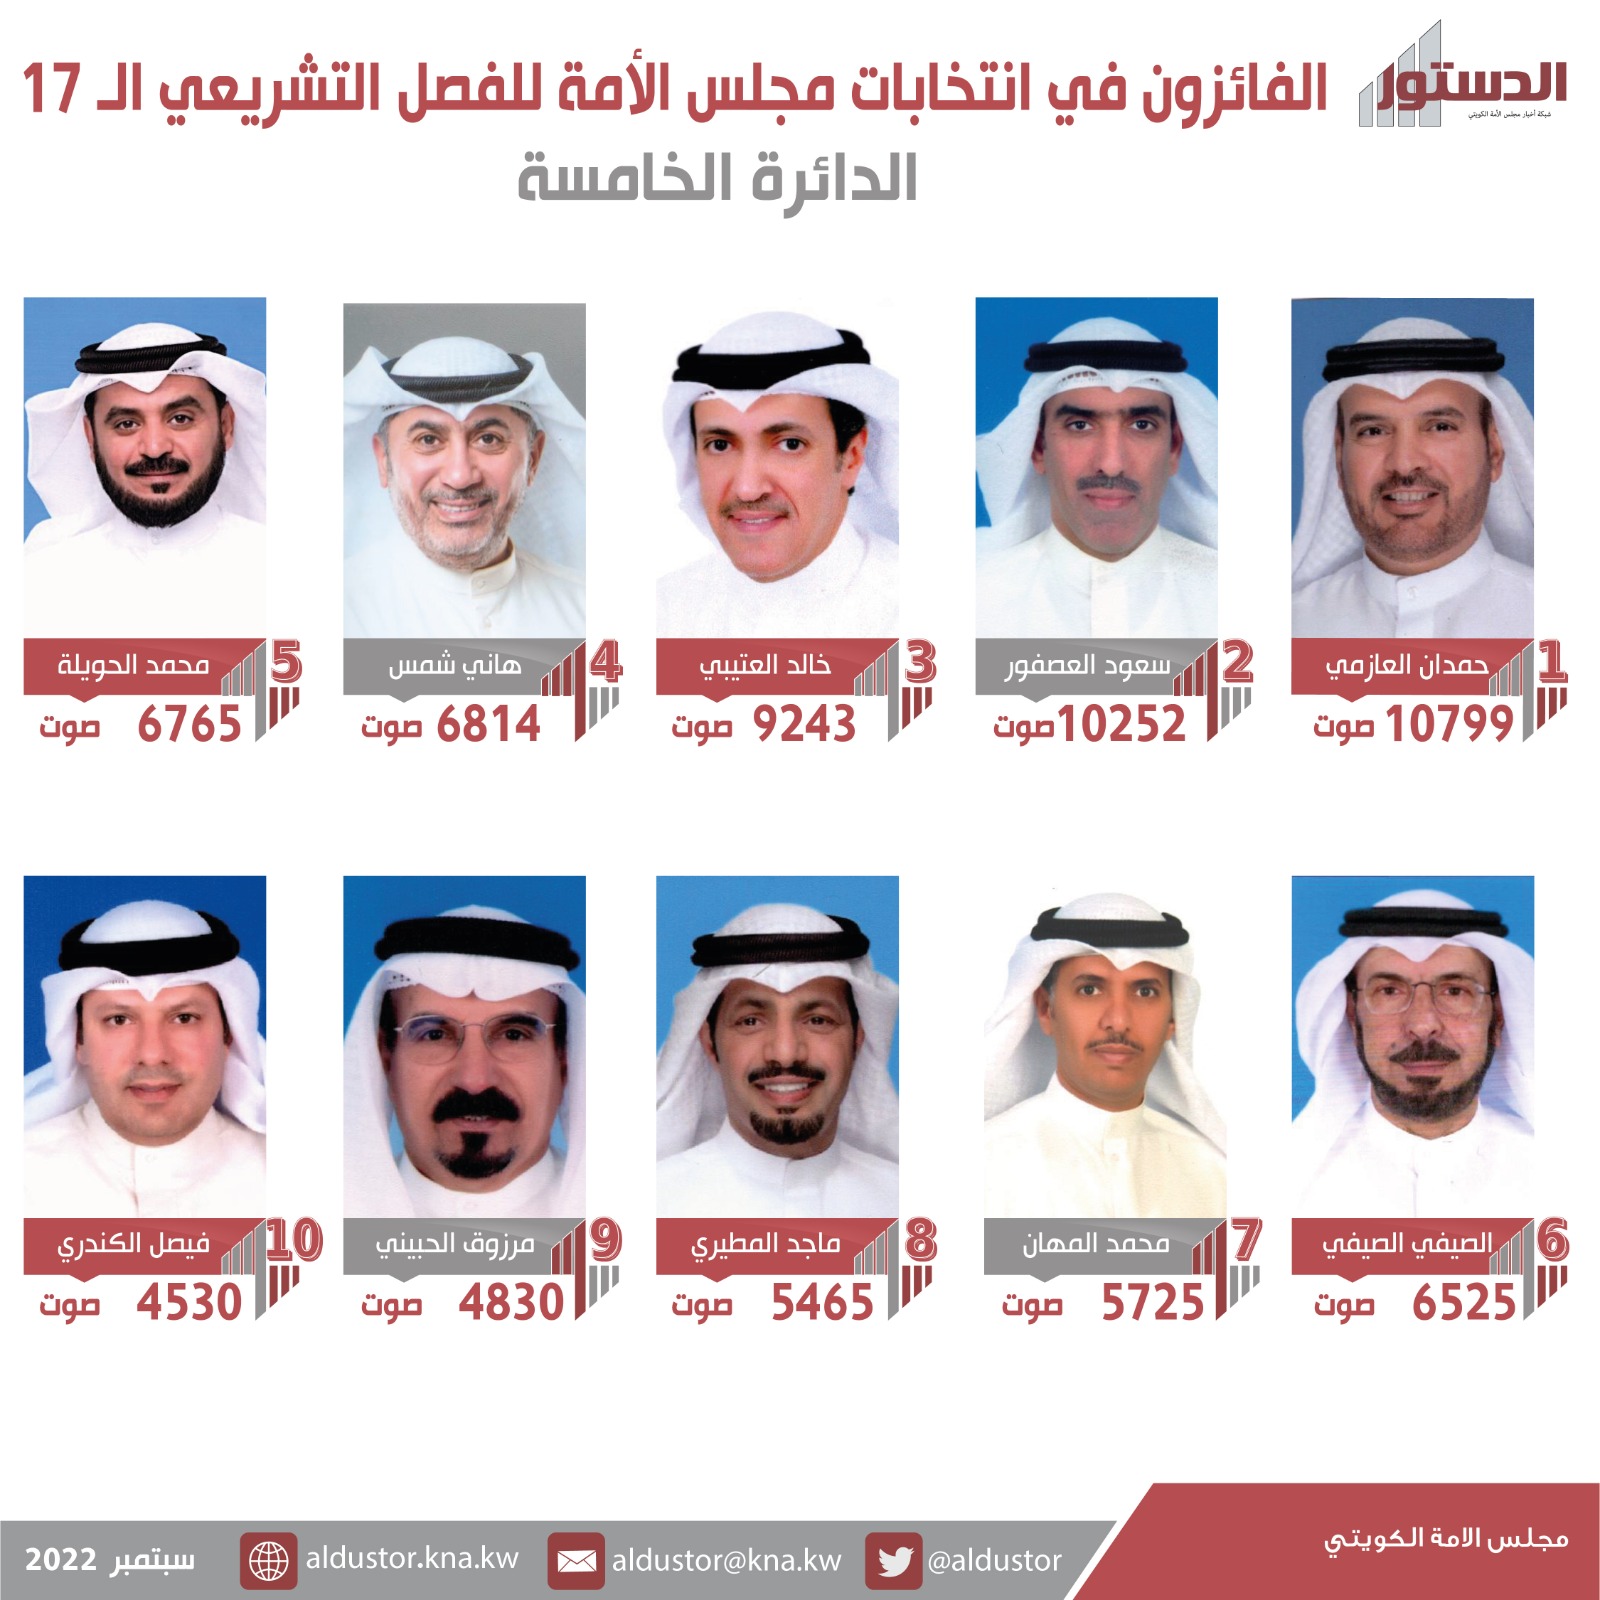 أسماء الفائزين بعضوية مجلس الأمة الكويتي (أمة 2022) عن الدائرة الانتخابية الخامسة